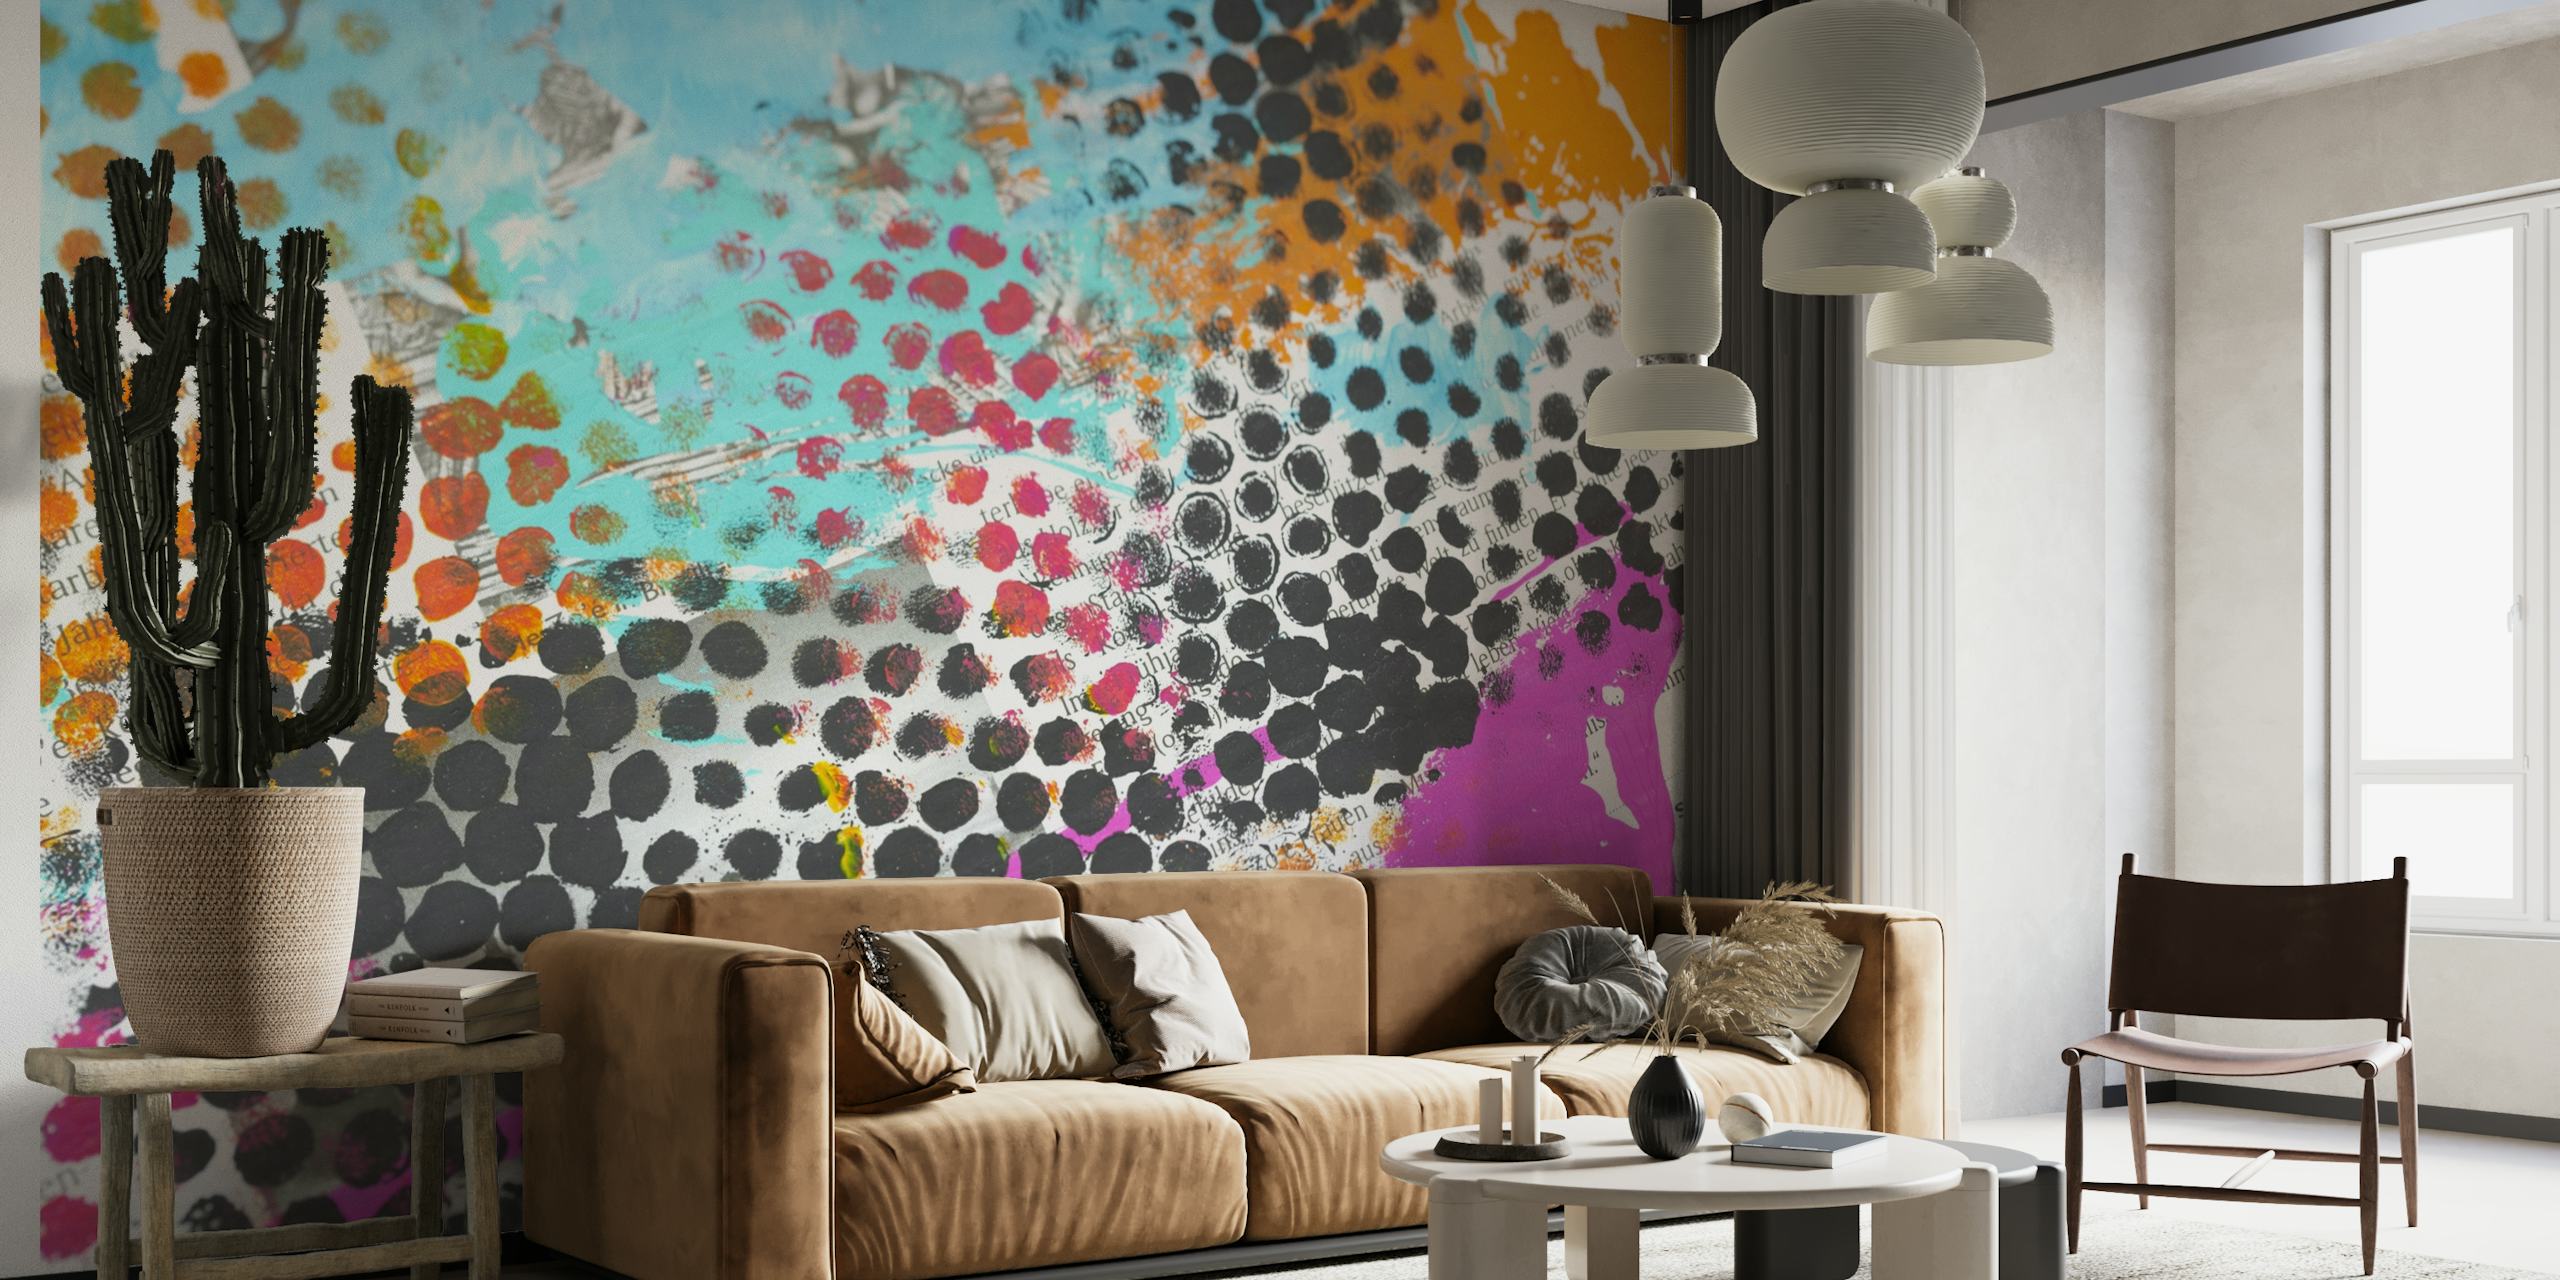 Kleurrijke muurschildering in grunge-stijl met gestippelde patronen en levendige kleuren